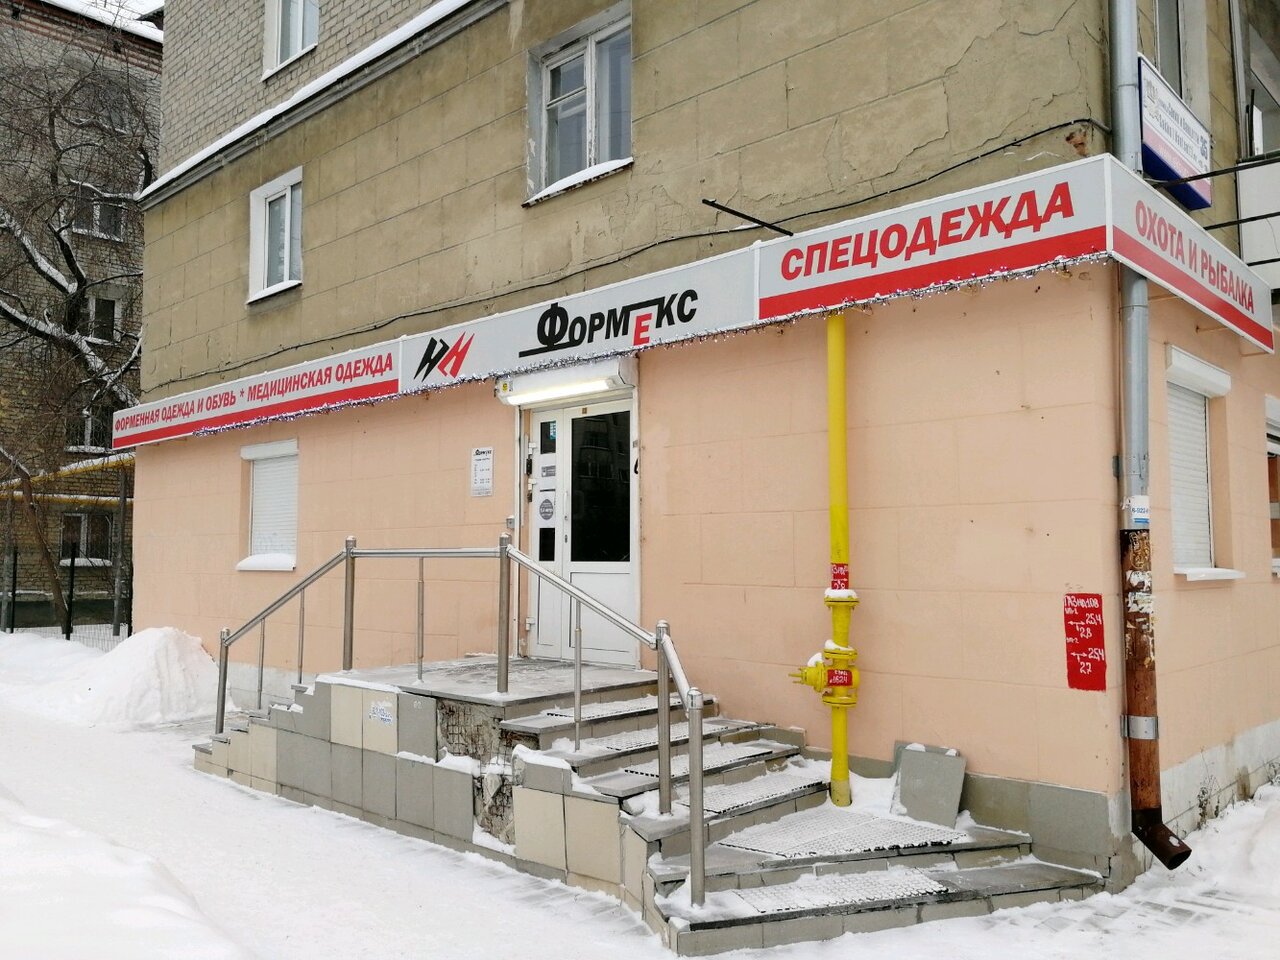 Вход в армейский магазин "Формекс" на Сакко и Ванцетти в Екатеринбурге